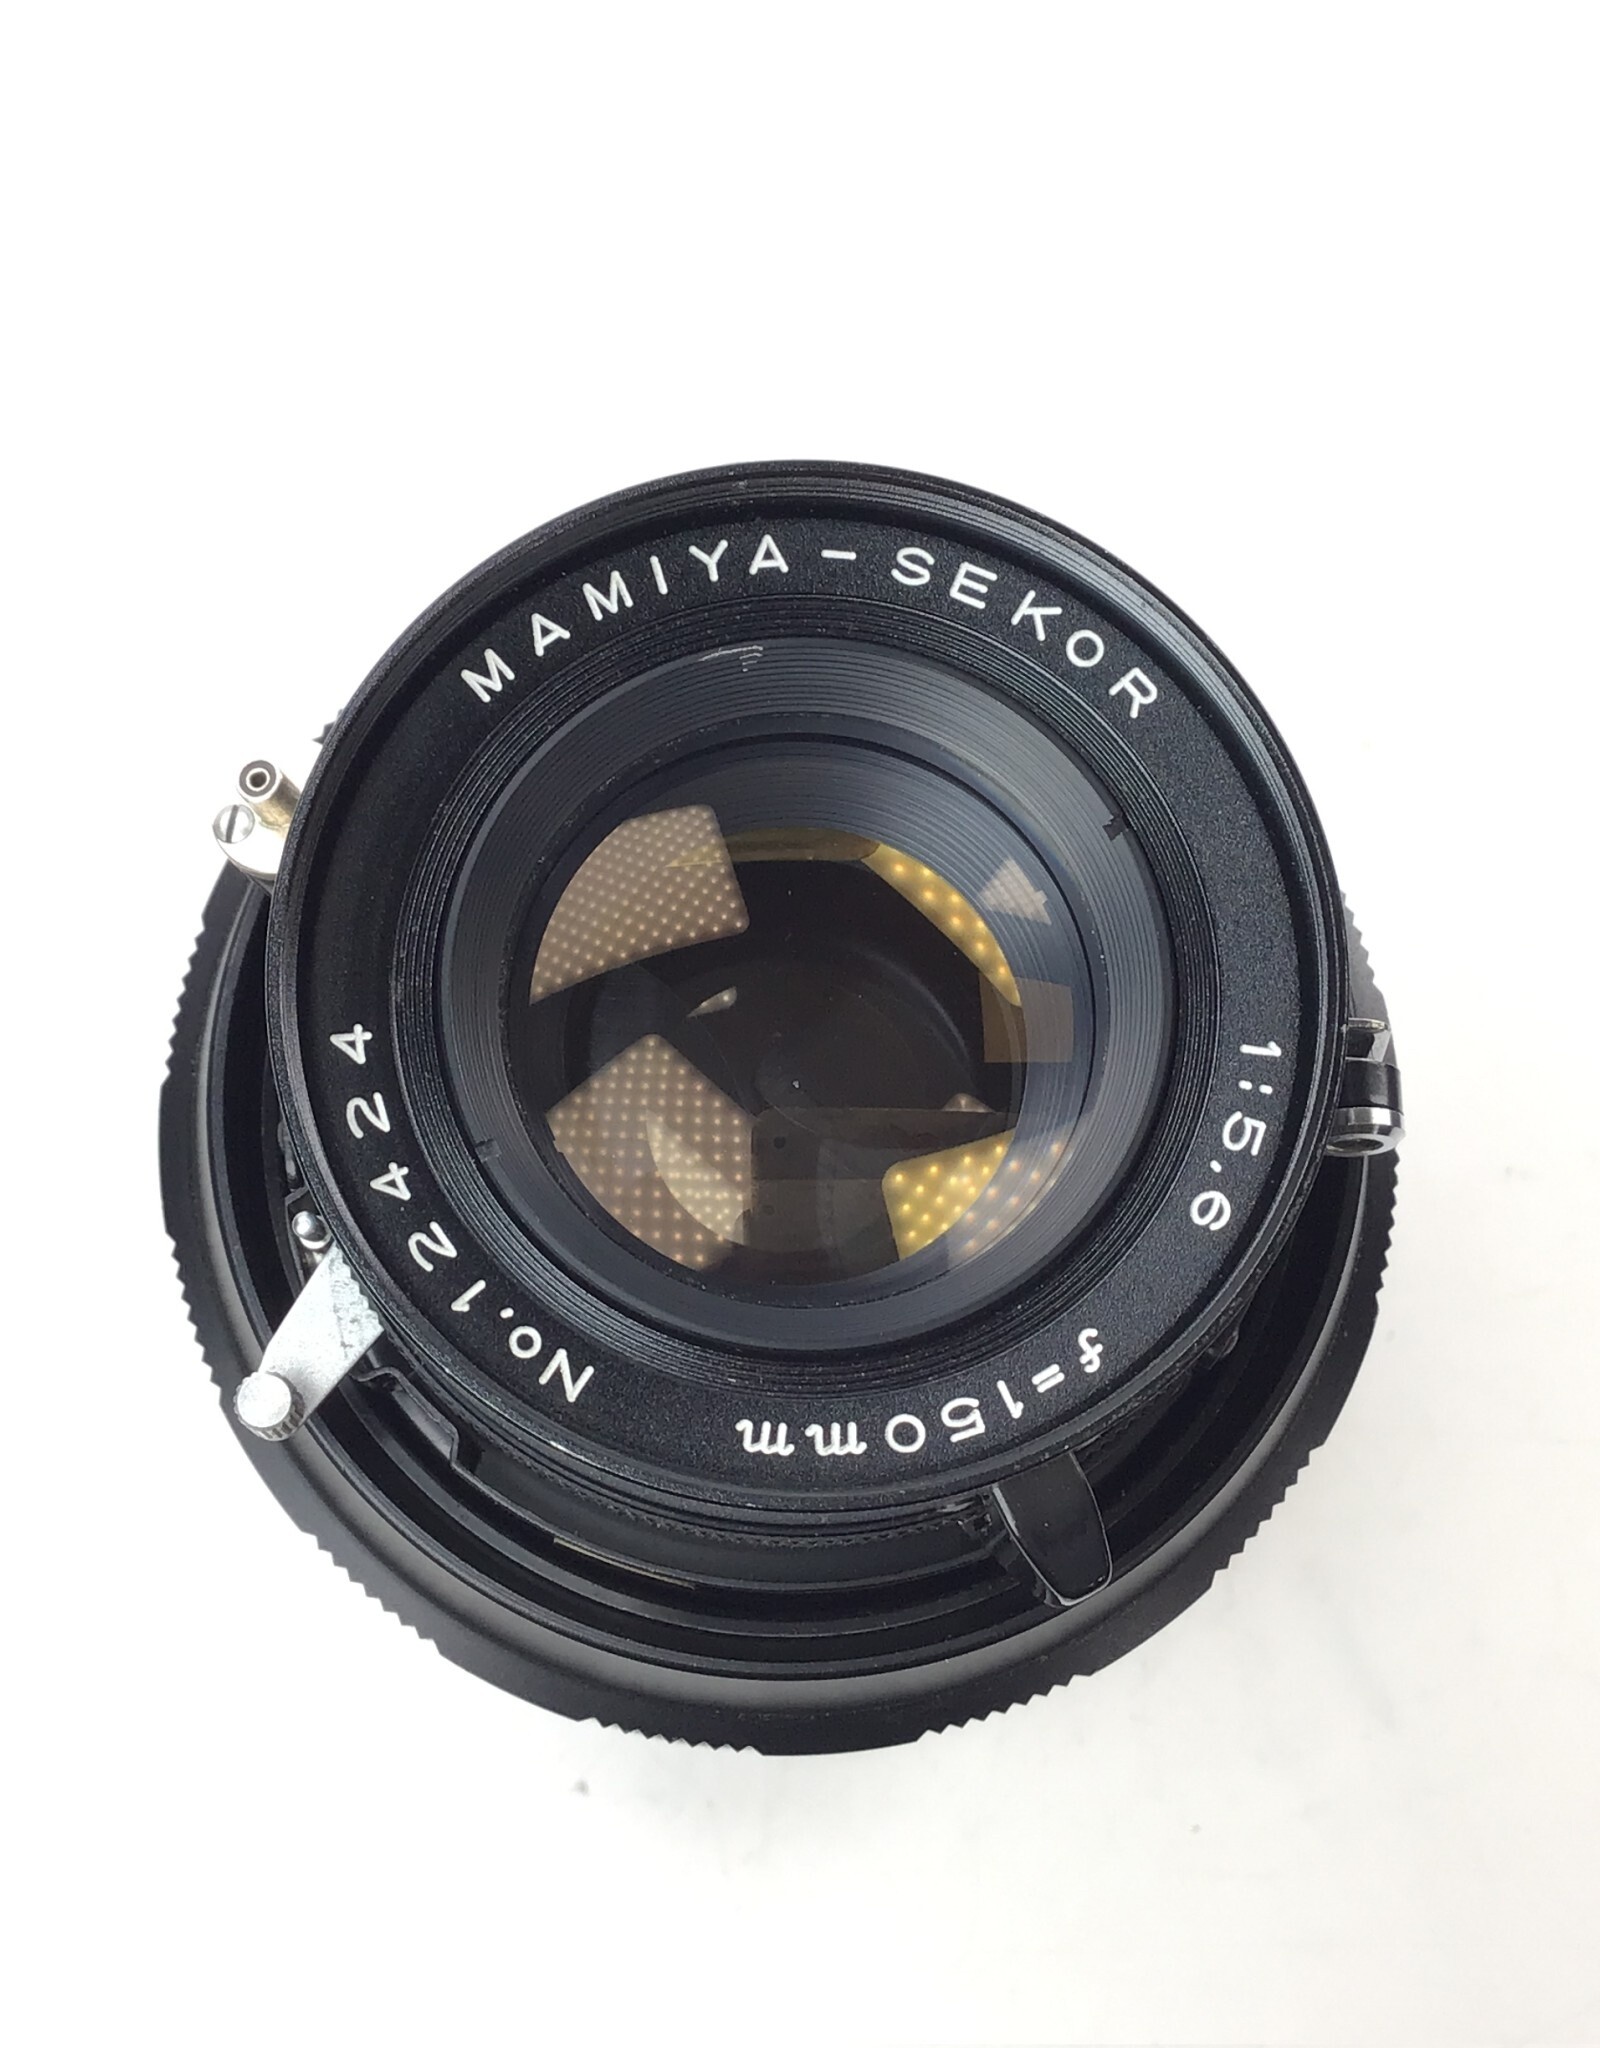 MAMIYA Mamiya Sekor 150mm f5.6 Lens for Universal Press Used Fair